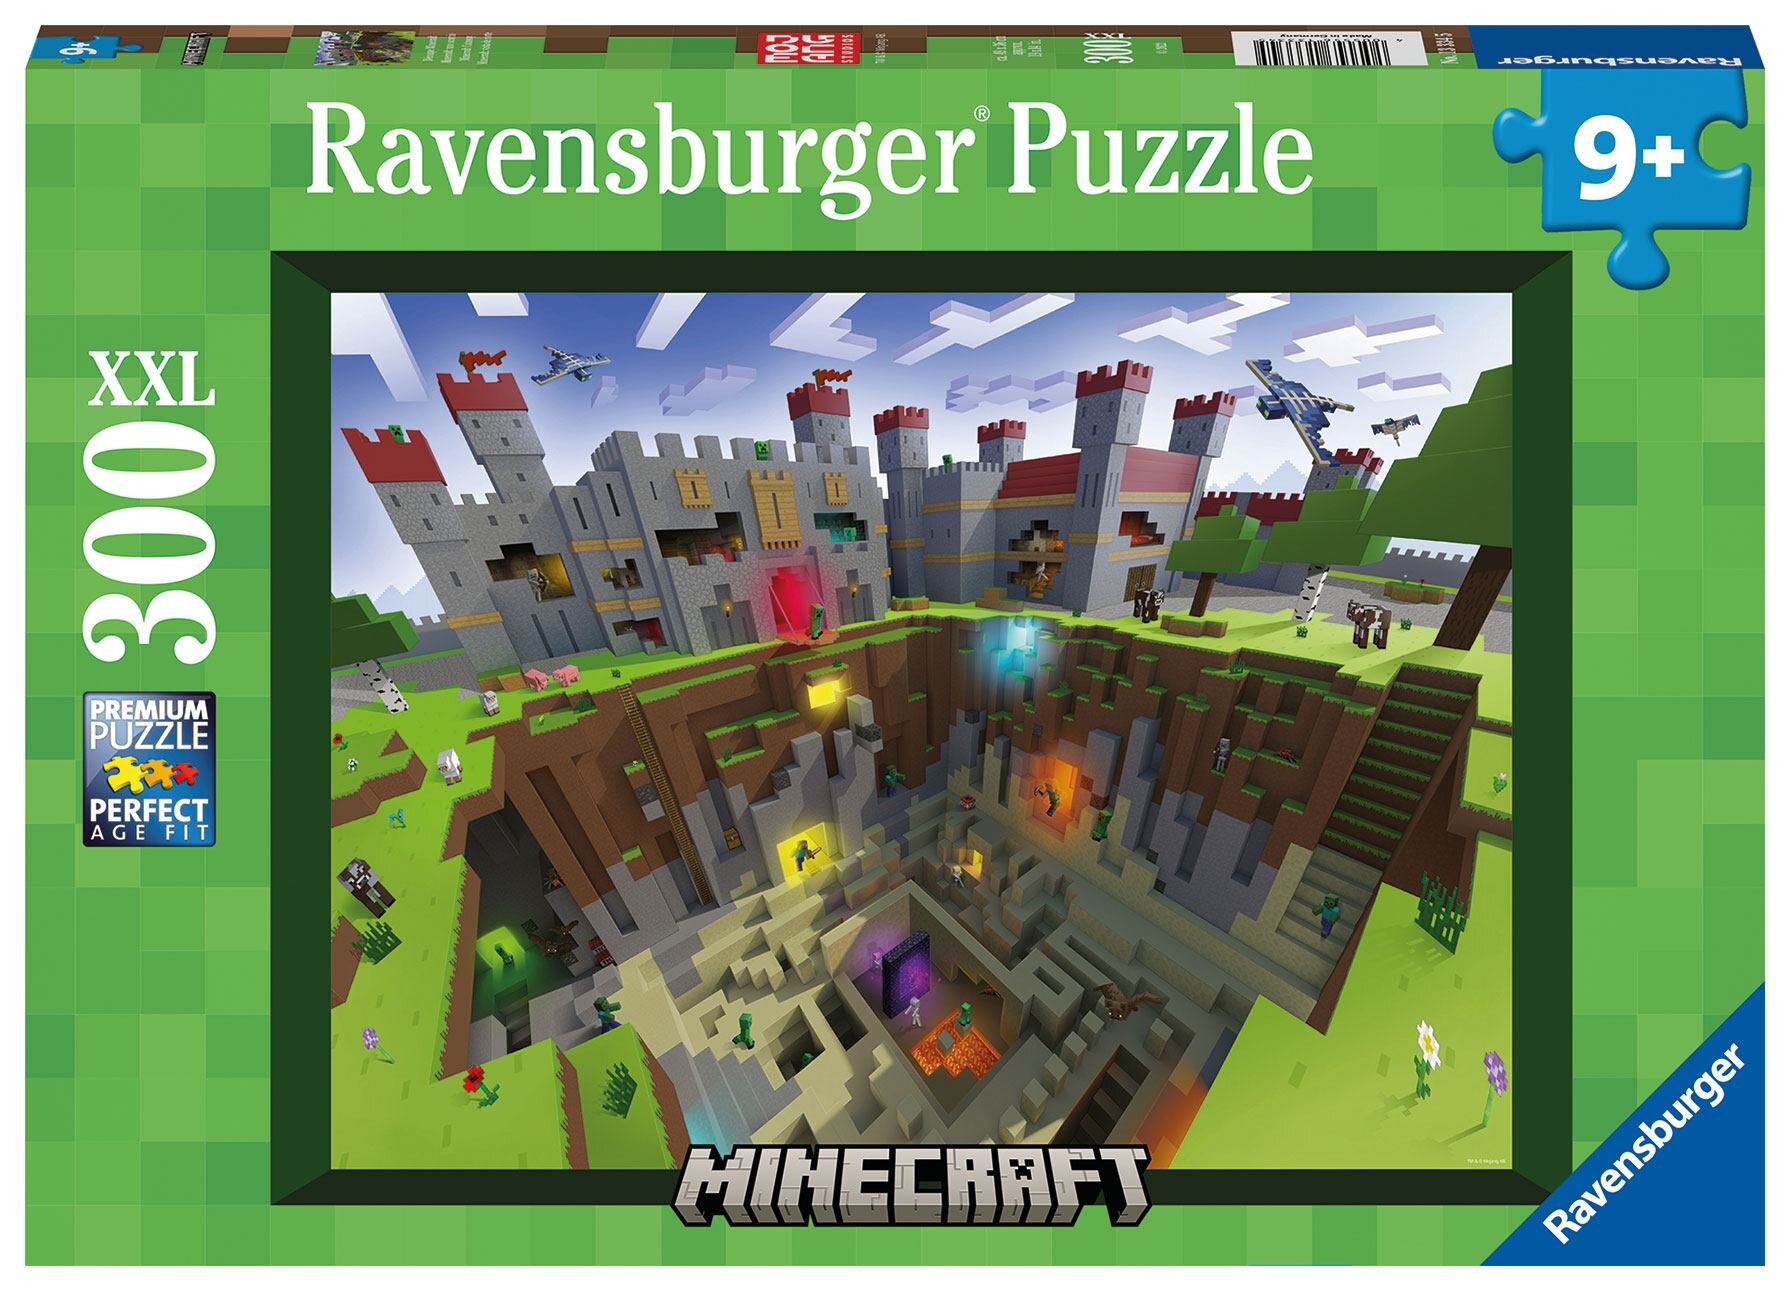 Ravensburger Puslespill - Minecraft Cutaway 300 brikker XXL